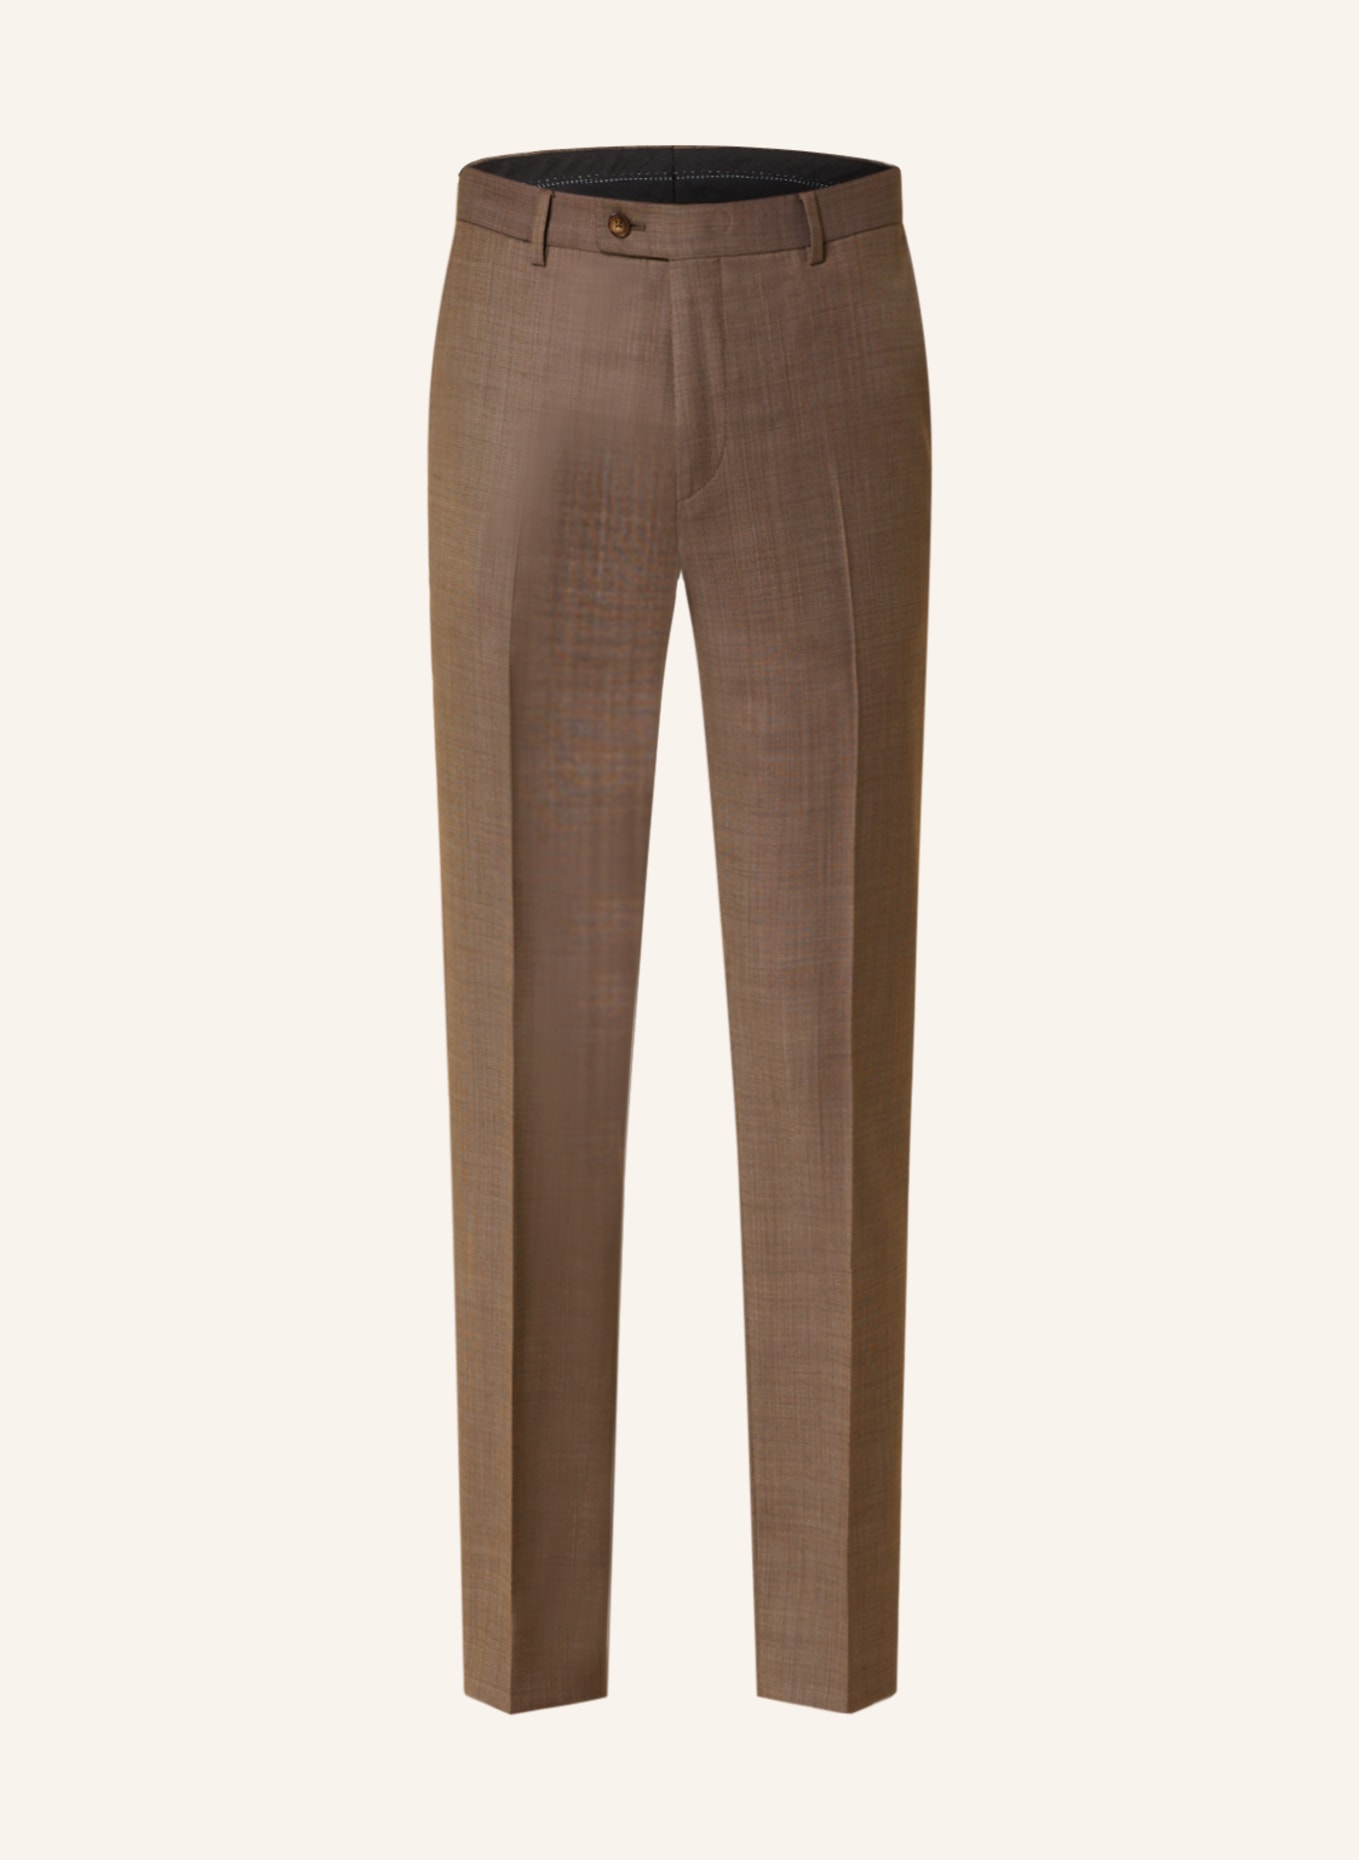 SAND COPENHAGEN Anzughose CRAIG Slim Fit, Farbe: BEIGE (Bild 1)